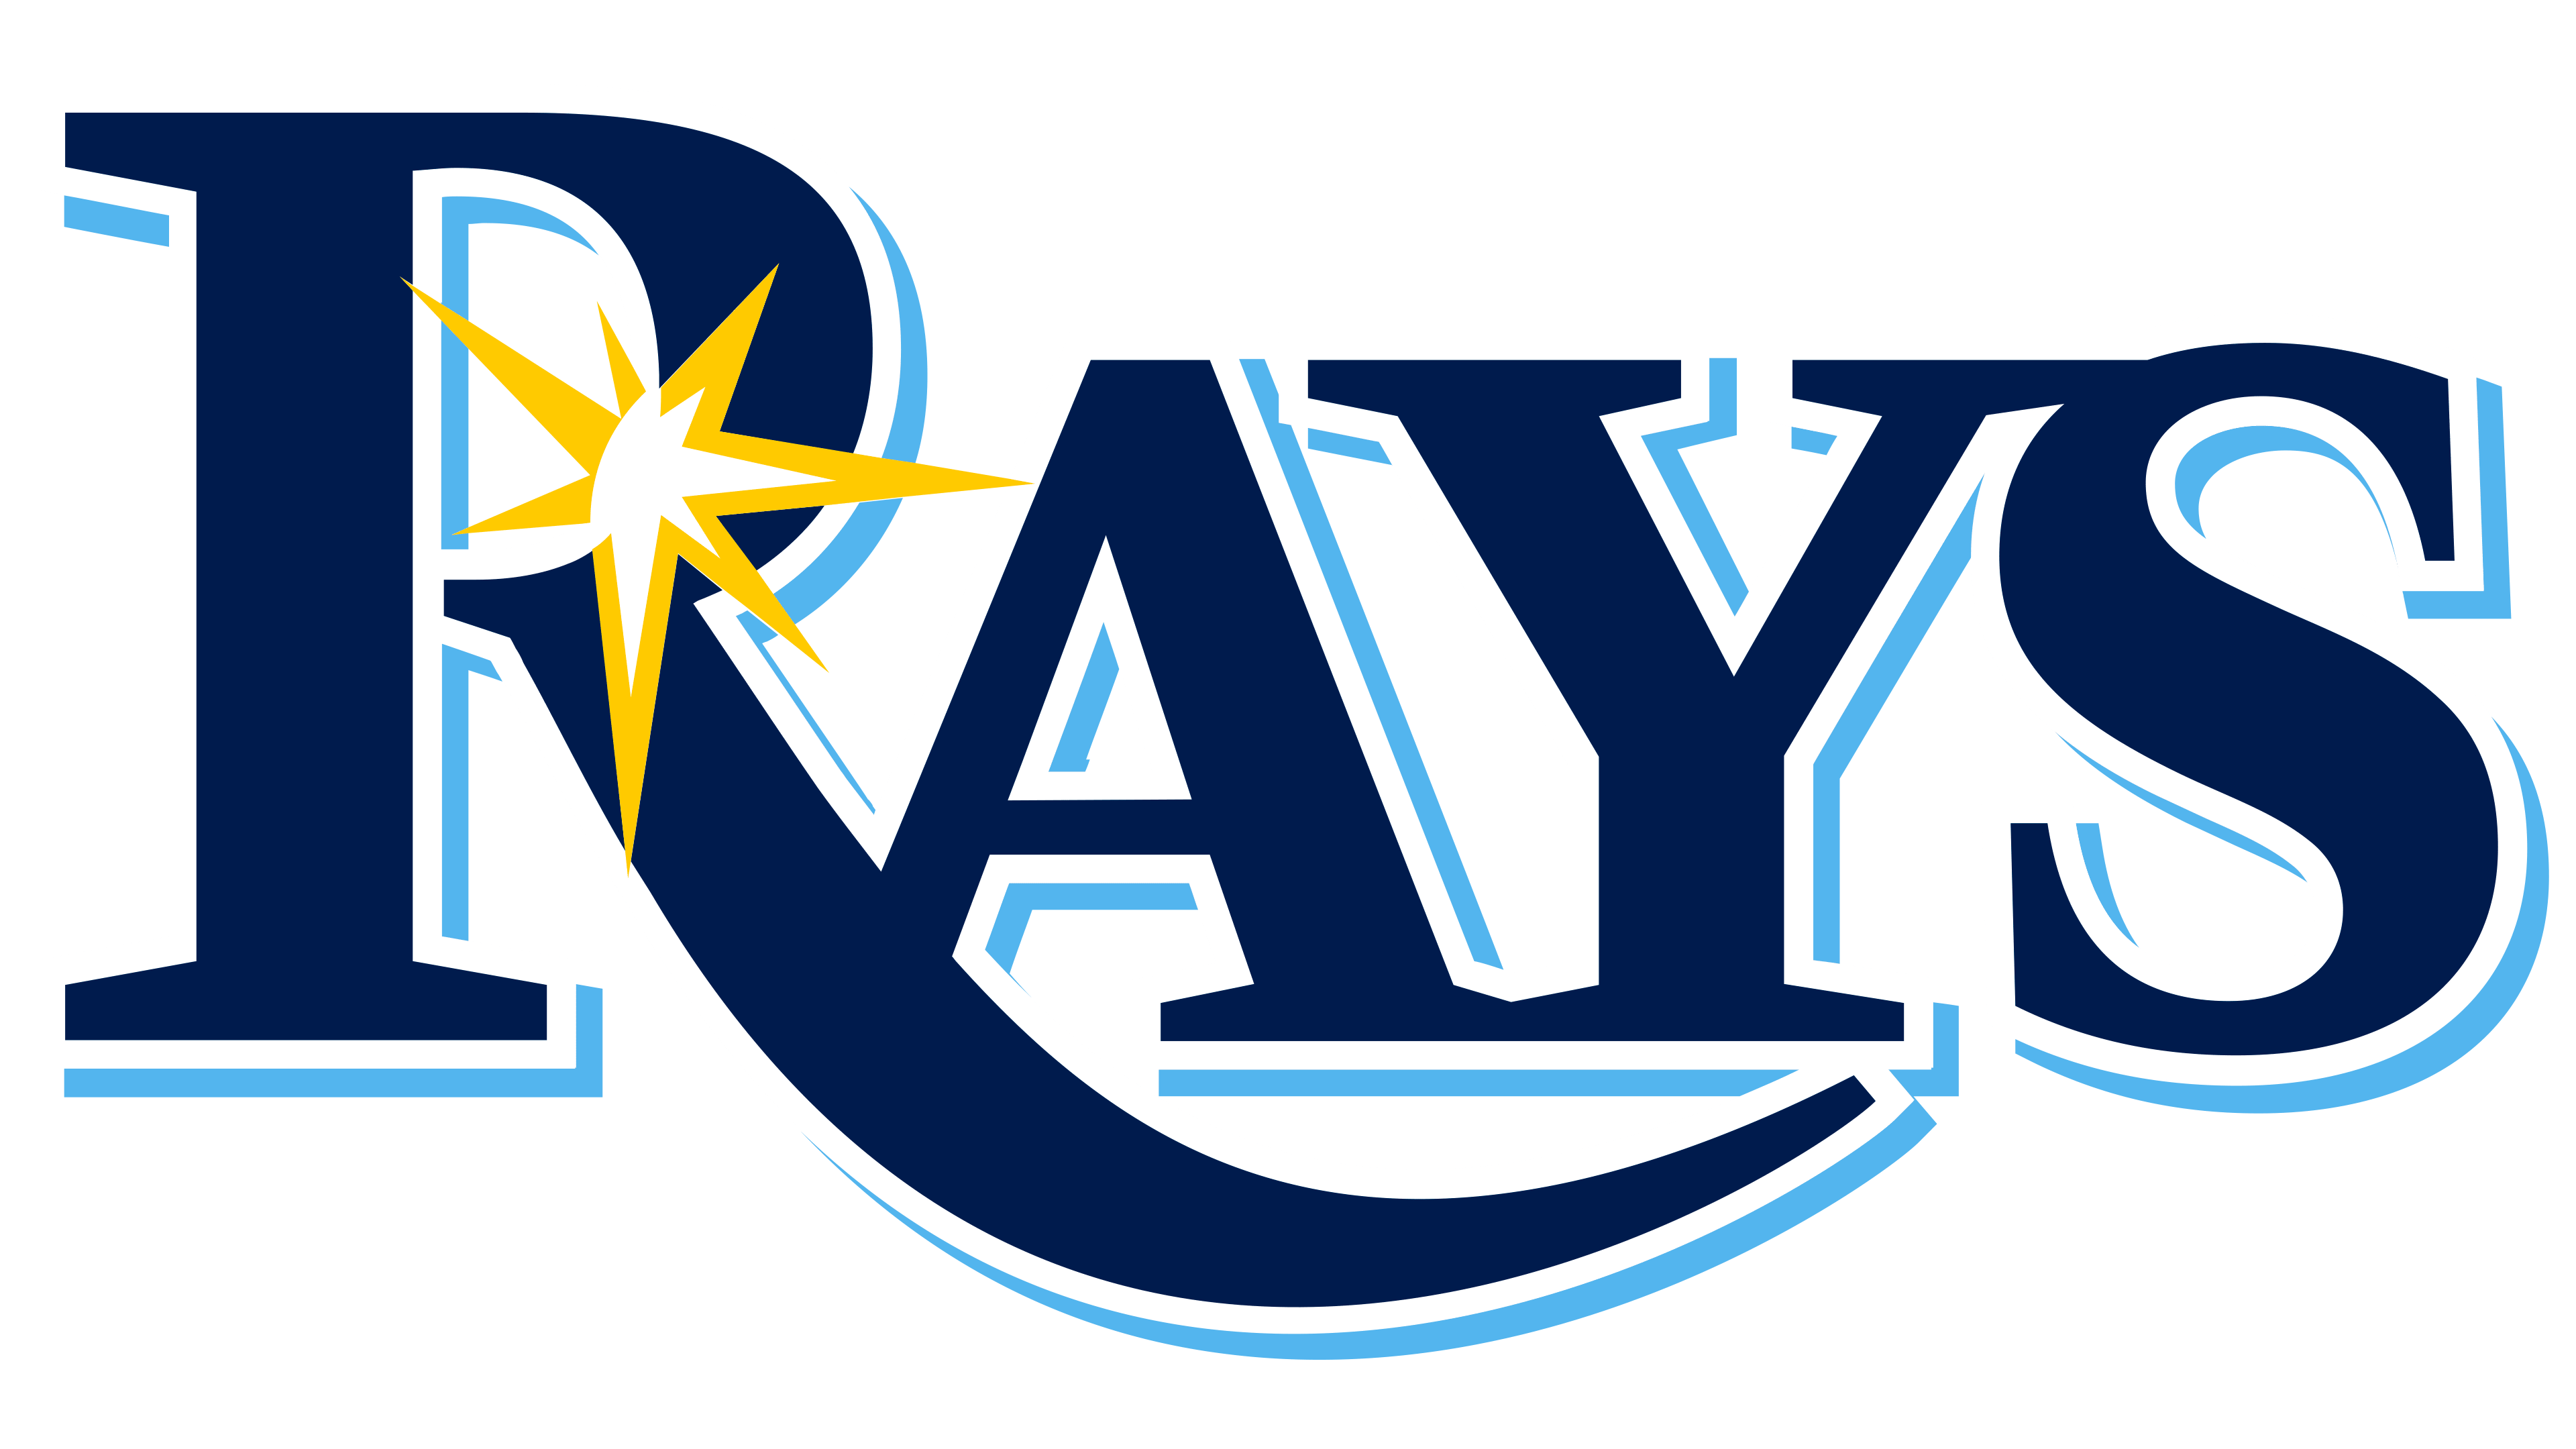 Tampa Bay Rays Logos.